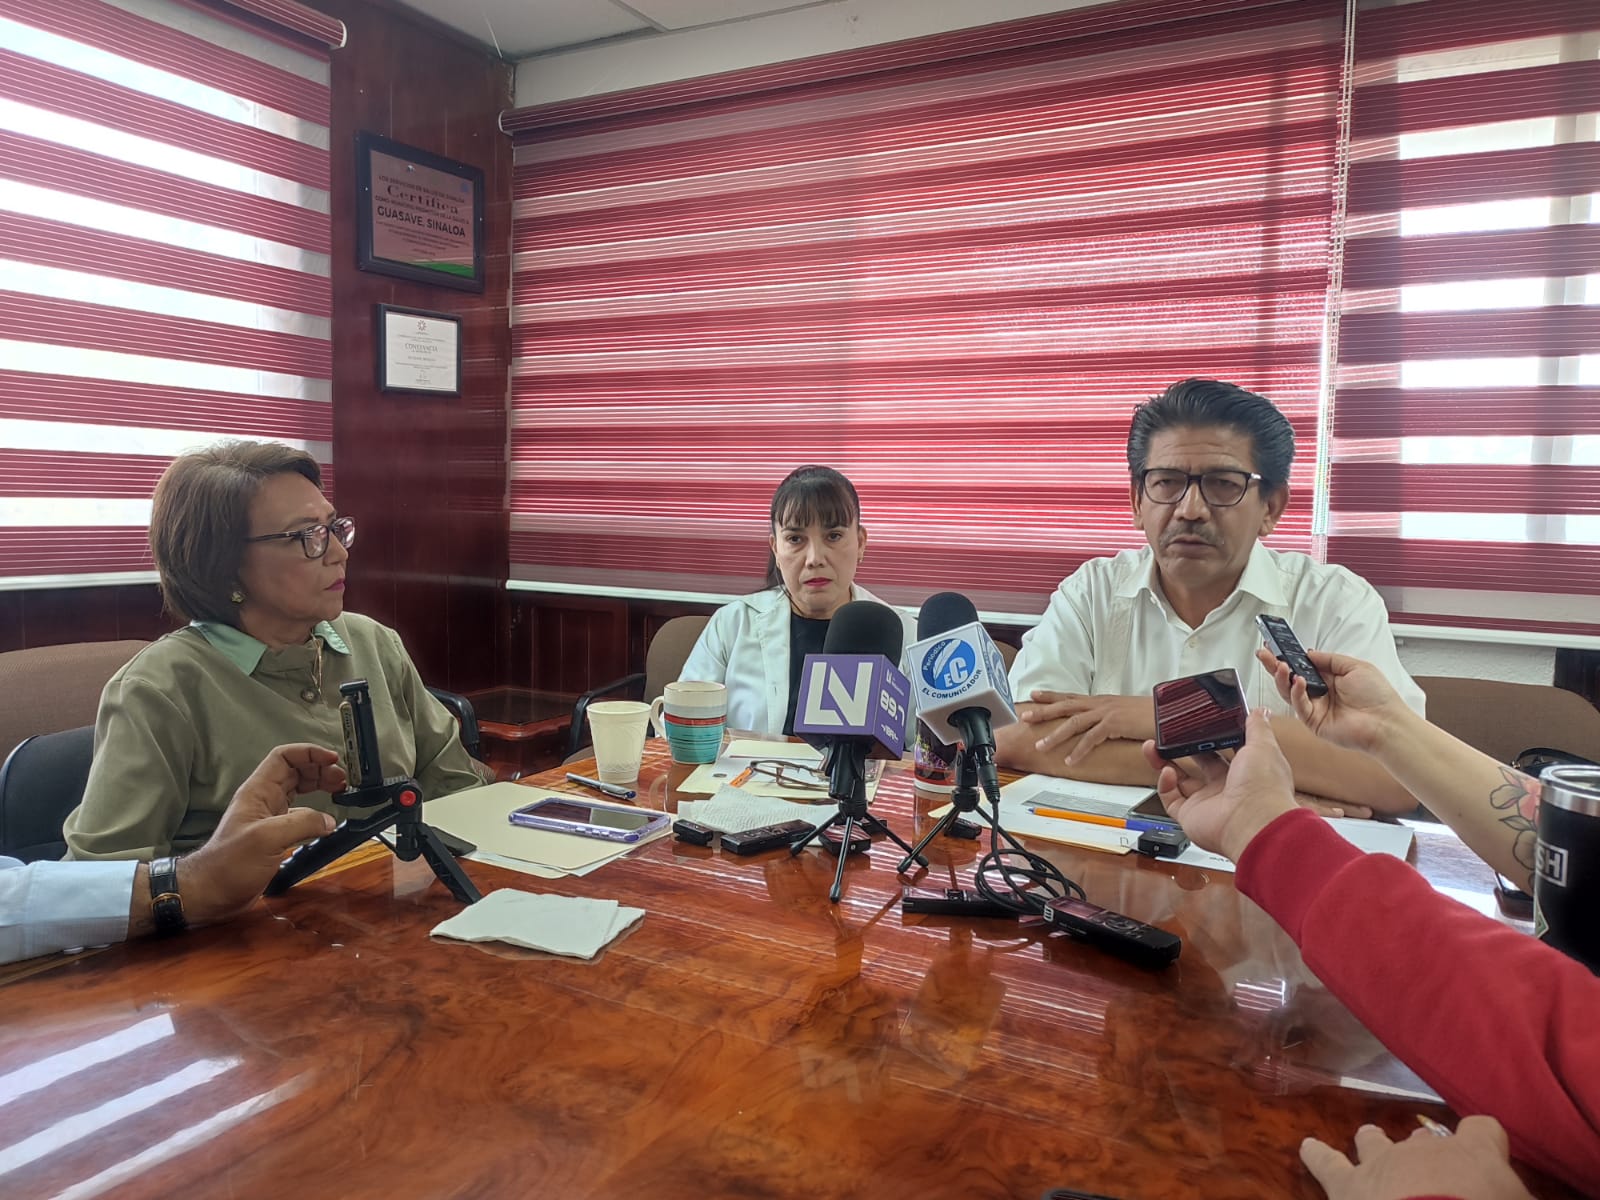 Martin Ahumada Quintero Lourdes Cardona, Irma Limon Elu y la doctora Andrea Leticia Espinoza Camacho